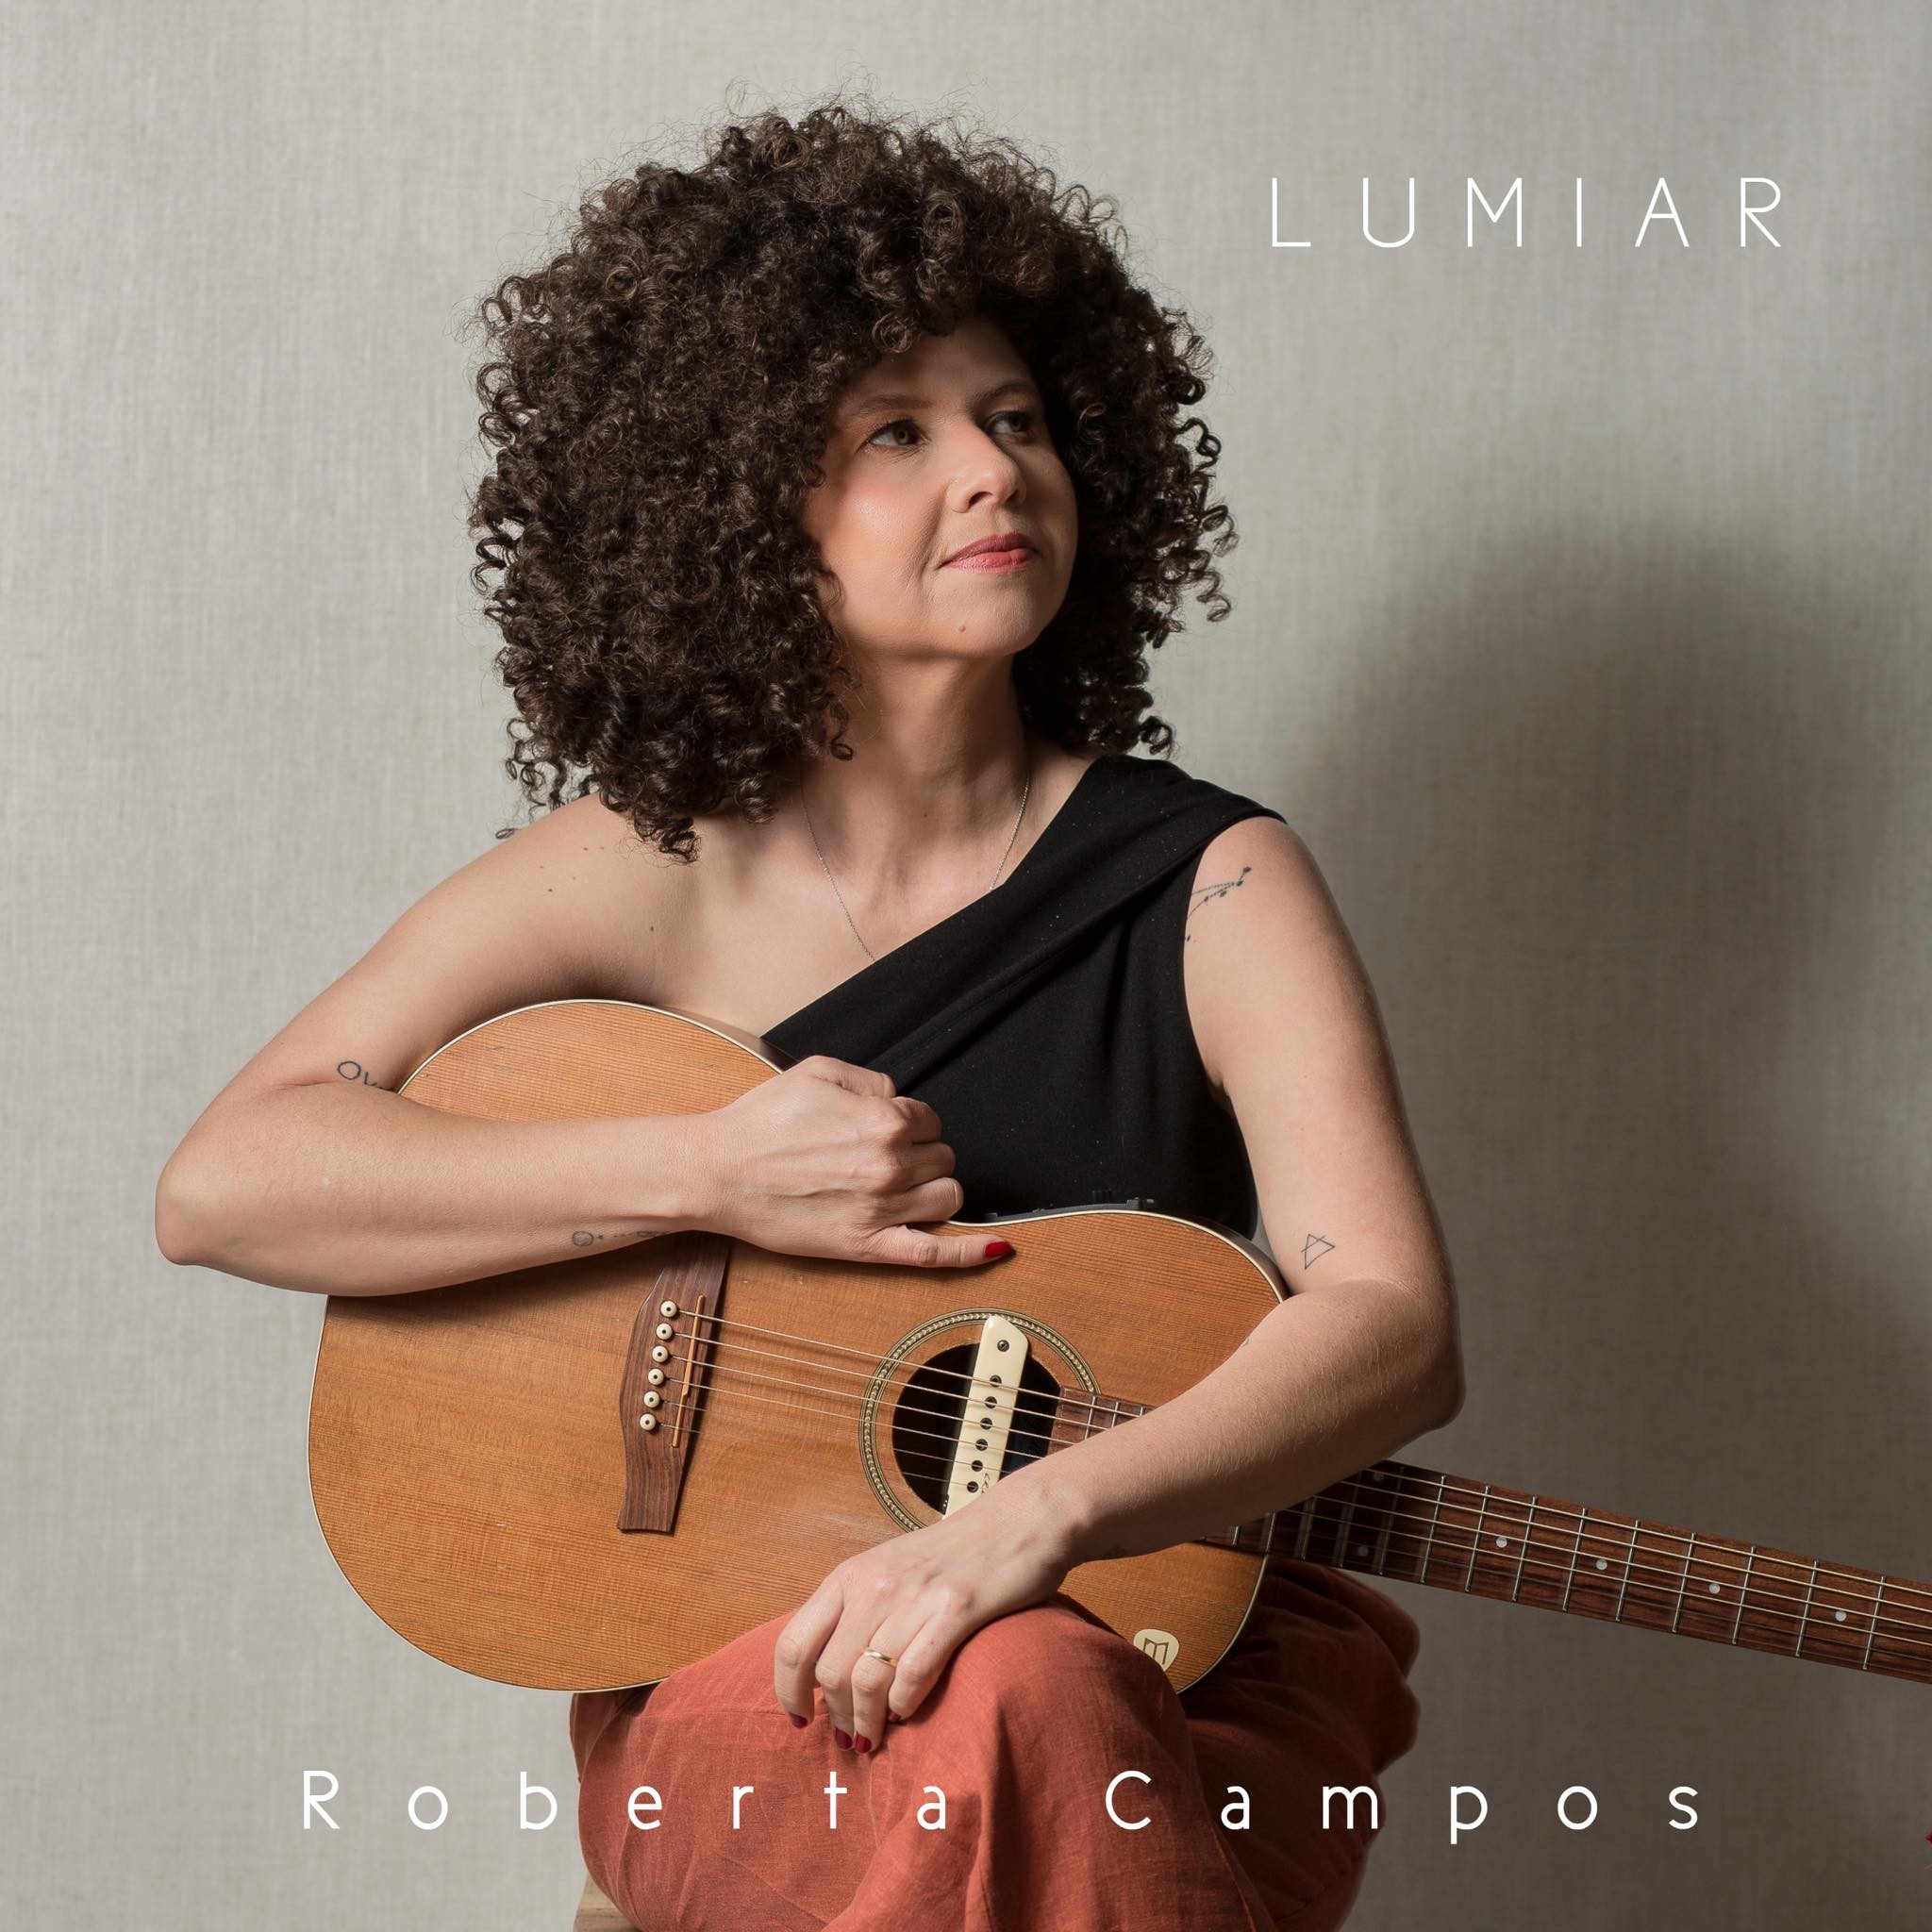 Roberta Campos atinge 'maioridade' em trilhas de novelas com gravação de 'Lumiar' em 'Vai na fé'